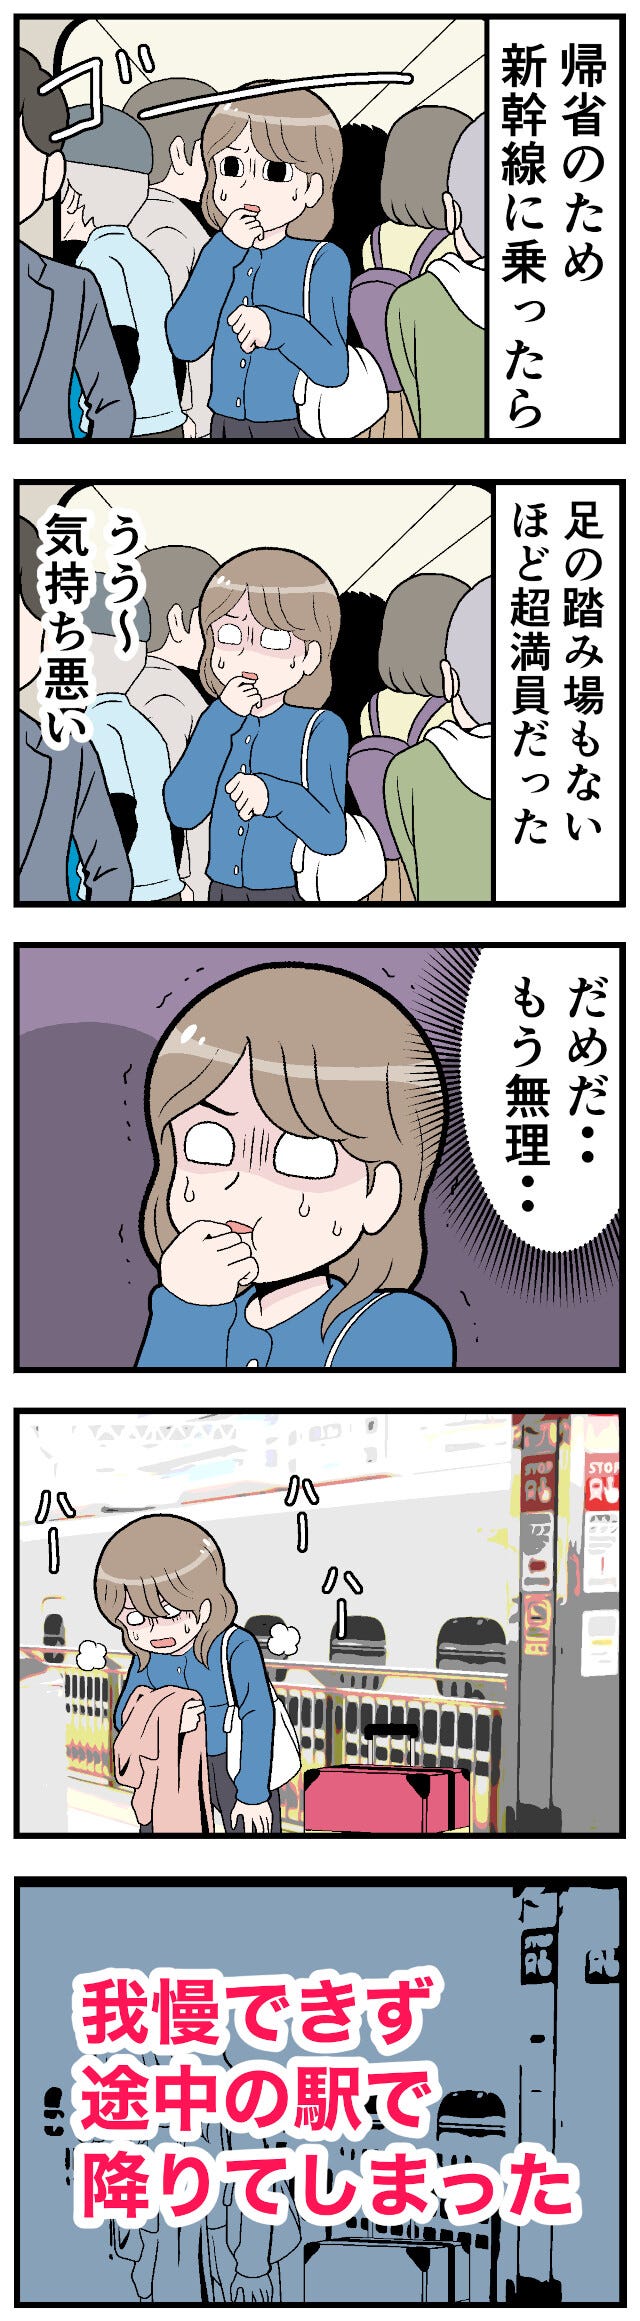 新幹線でトラブった話 第12回 【漫画】超満員の車内で「もう無理」